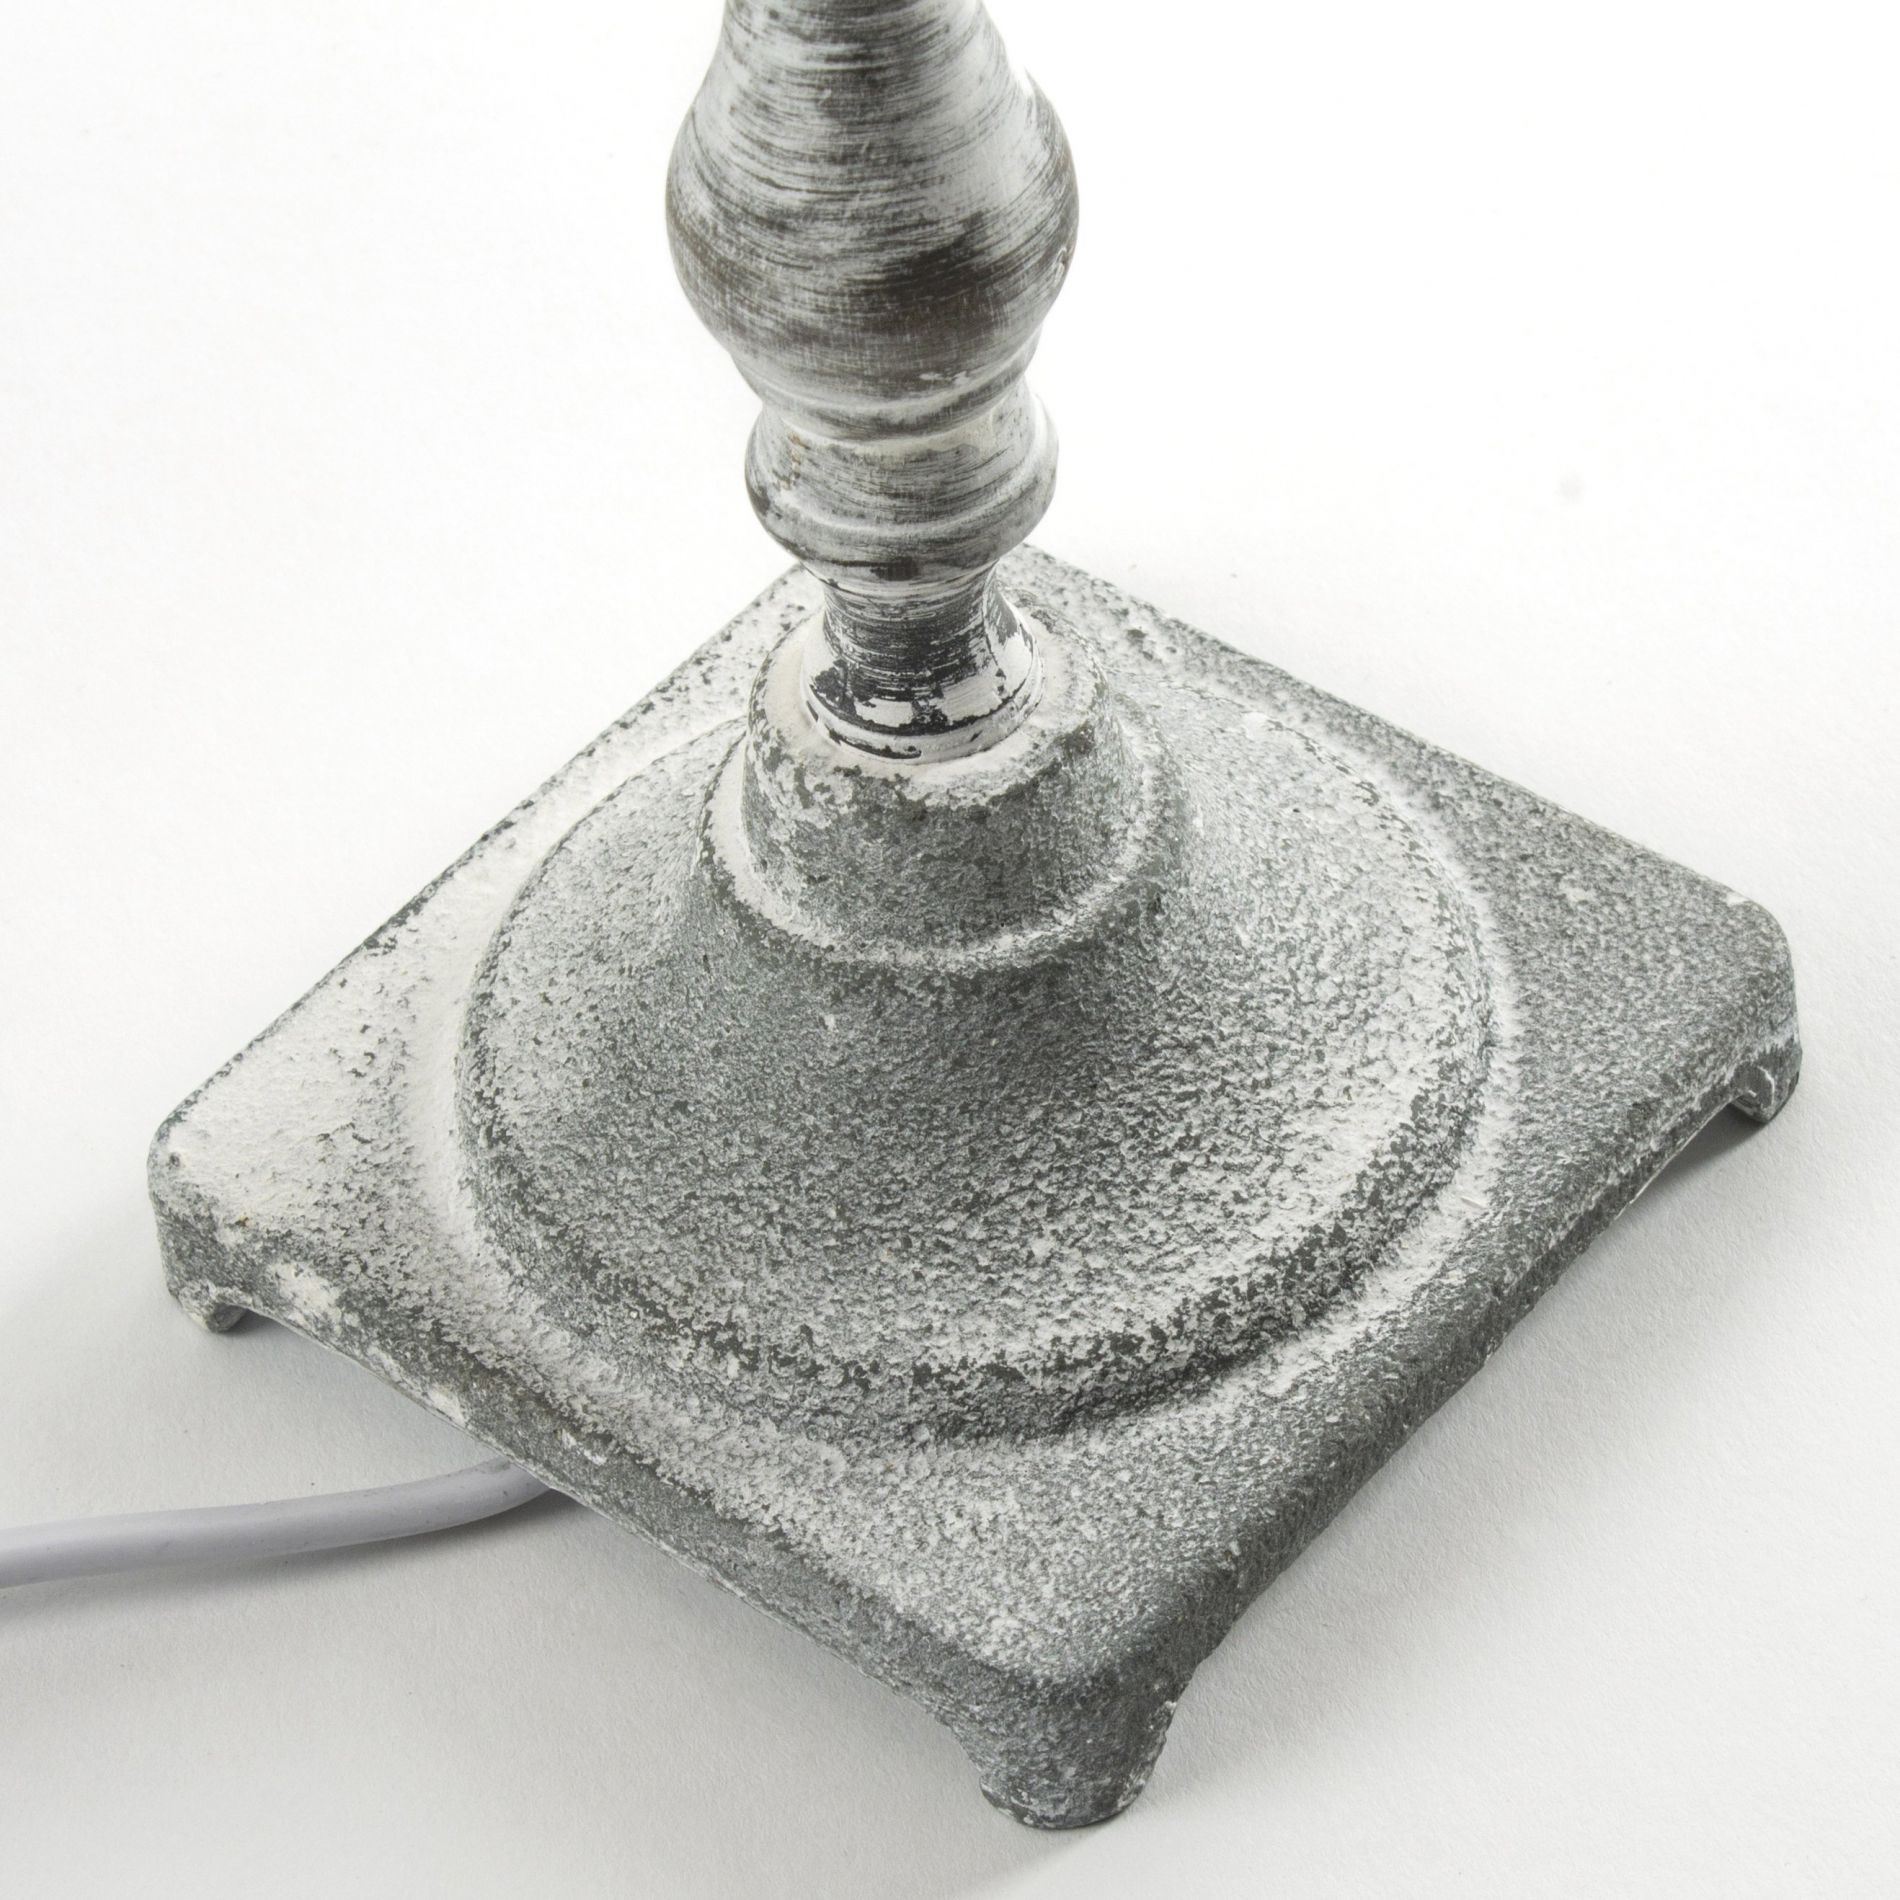 Lampe de table OCTAVIE grise en métal